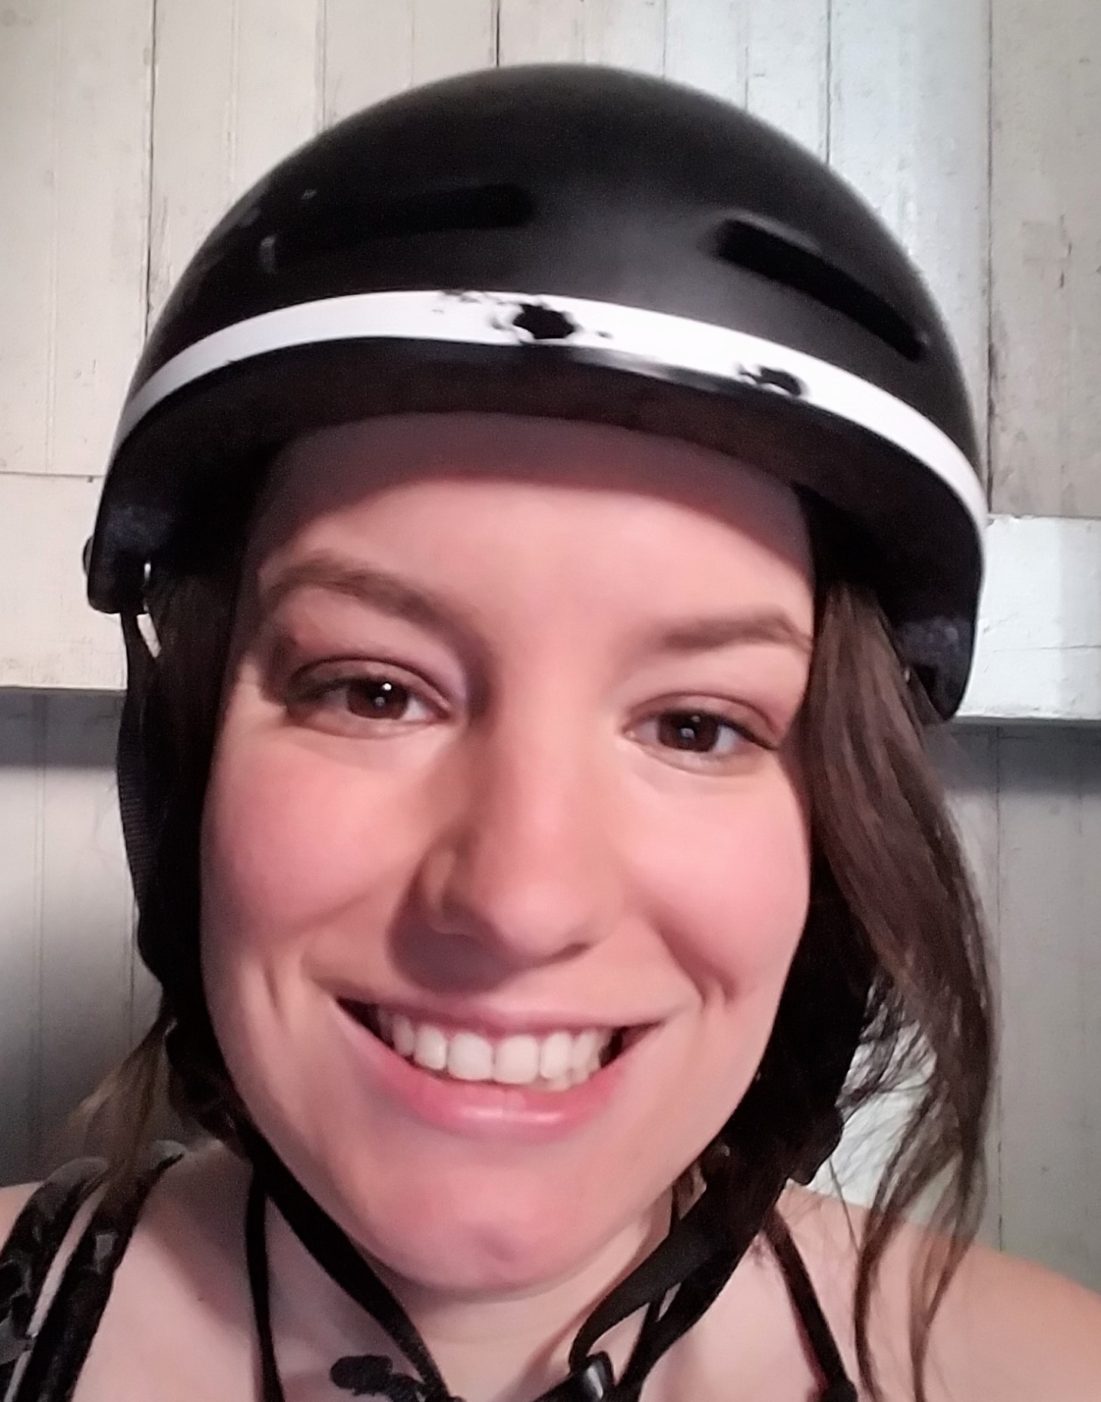 The Helmet Hottie